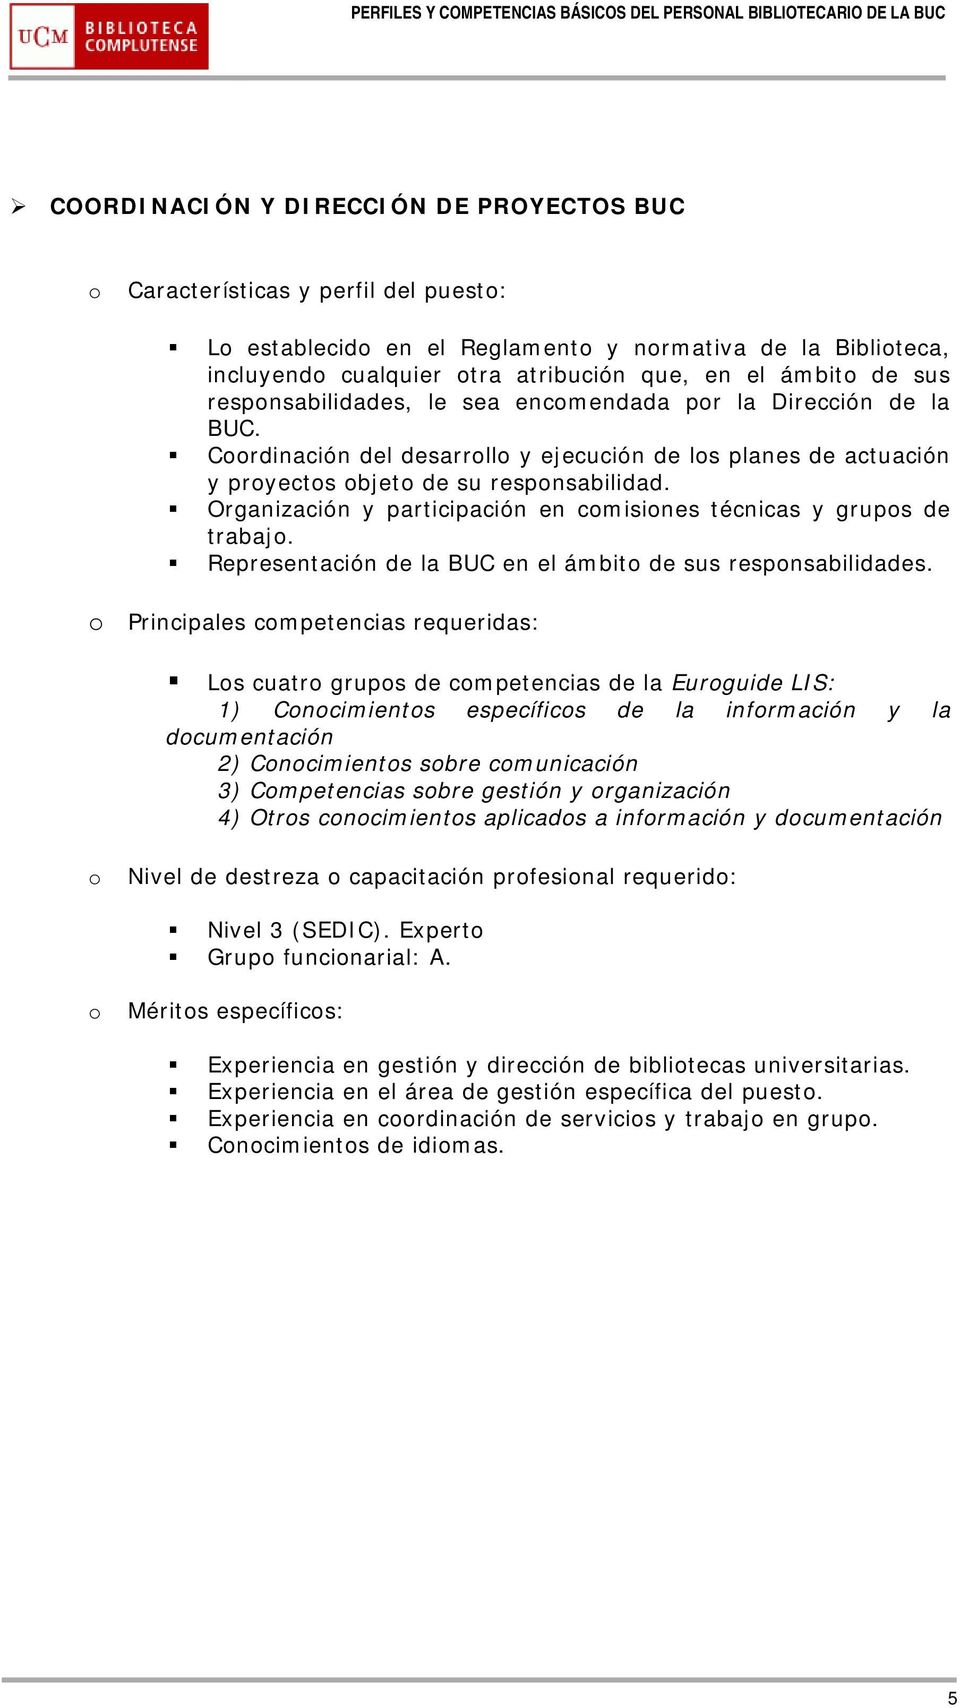 Organización y participación en cmisines técnicas y grups de trabaj. Representación de la BUC en el ámbit de sus respnsabilidades.